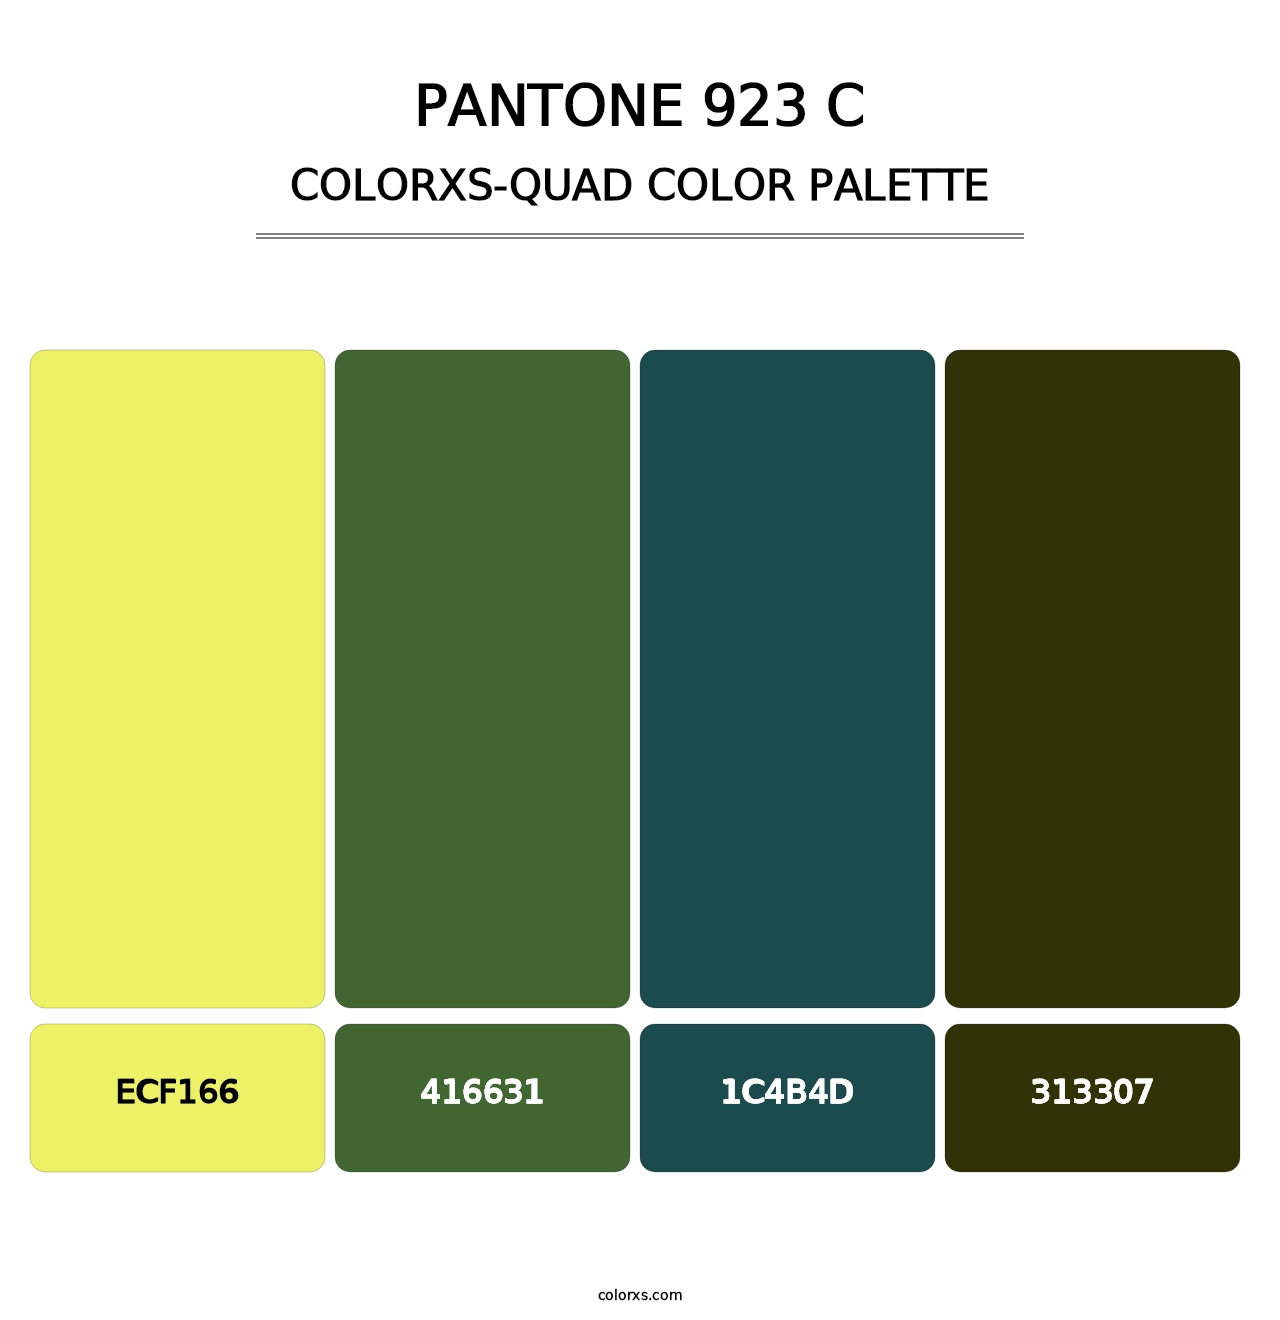 PANTONE 923 C - Colorxs Quad Palette